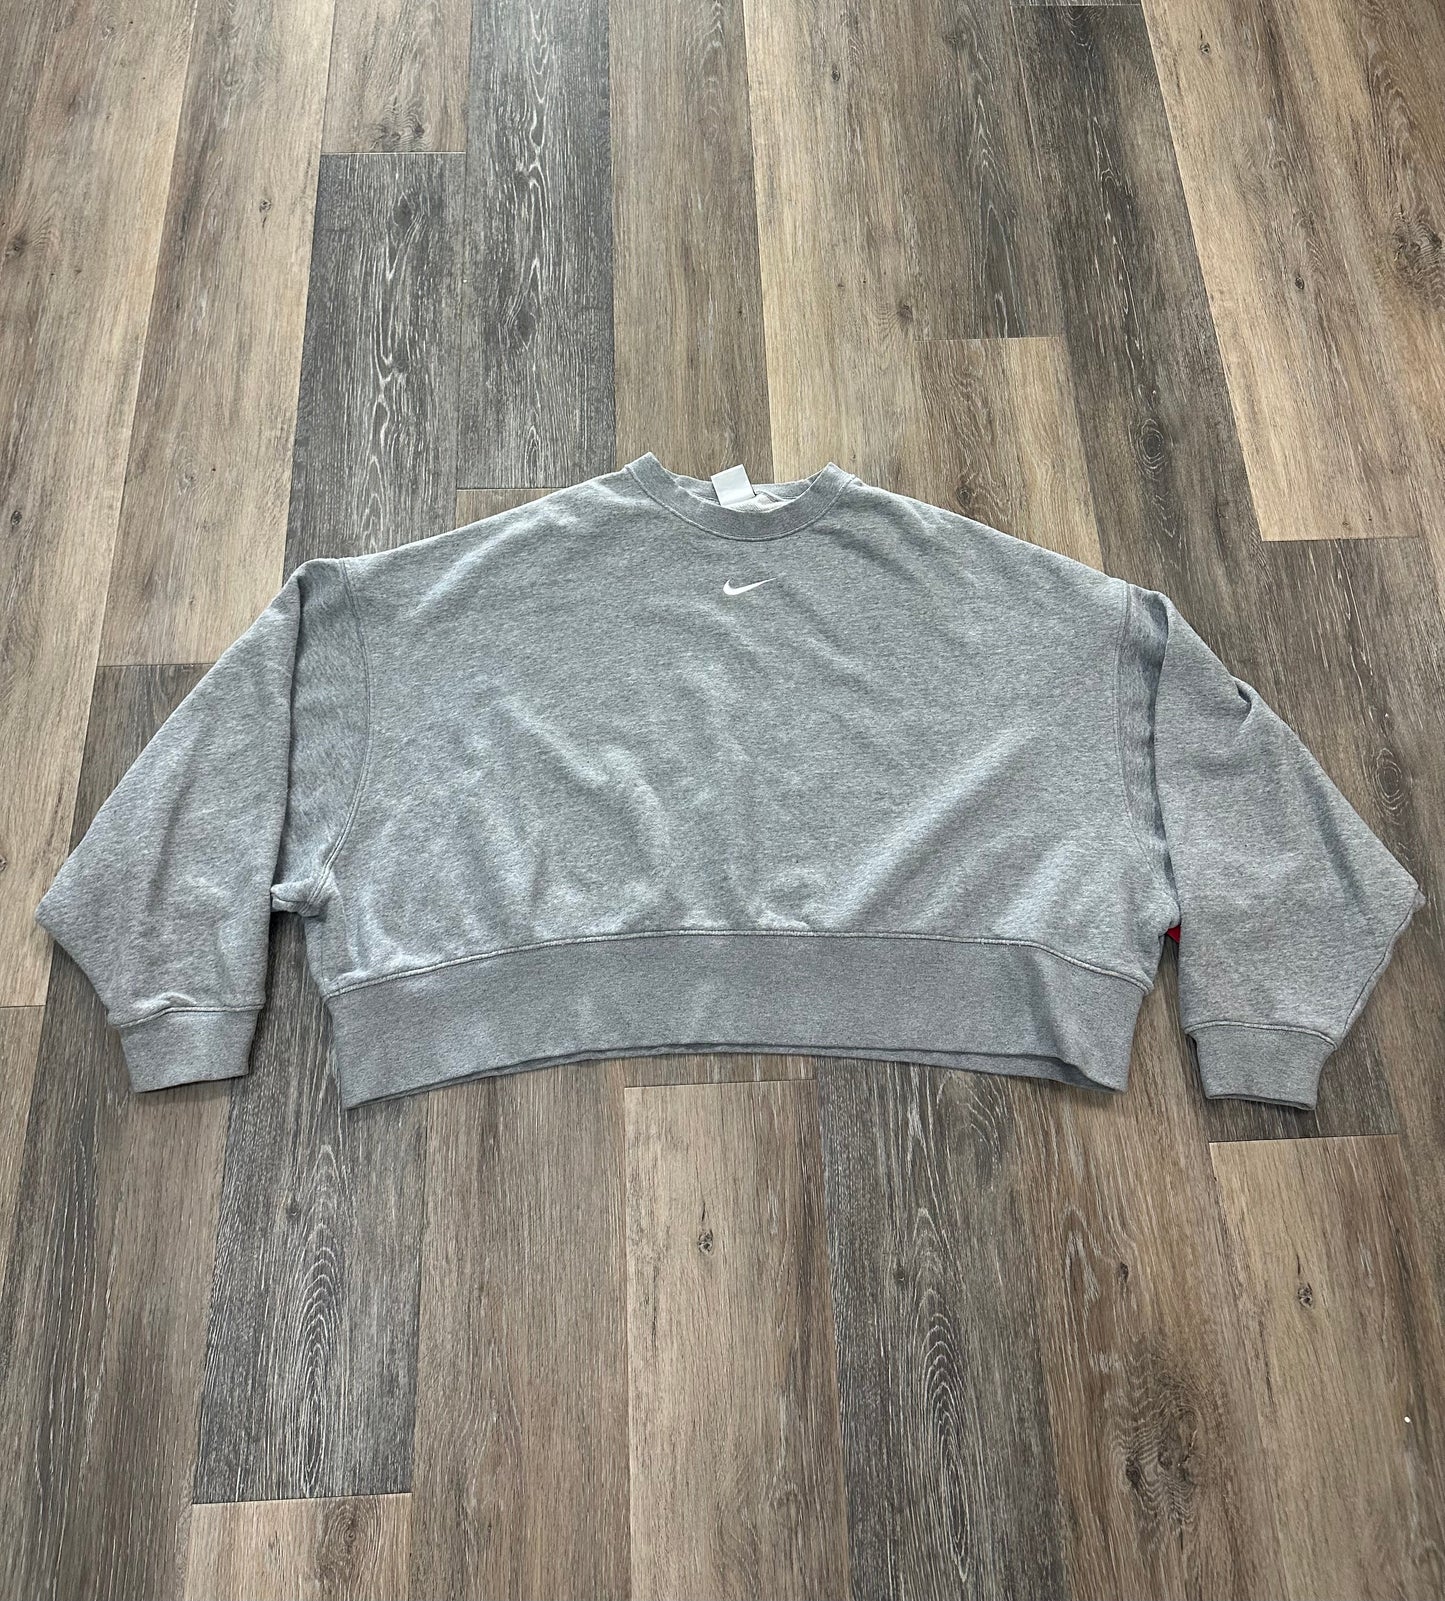 Grey Athletic Sweatshirt Crewneck Nike Apparel, Size L